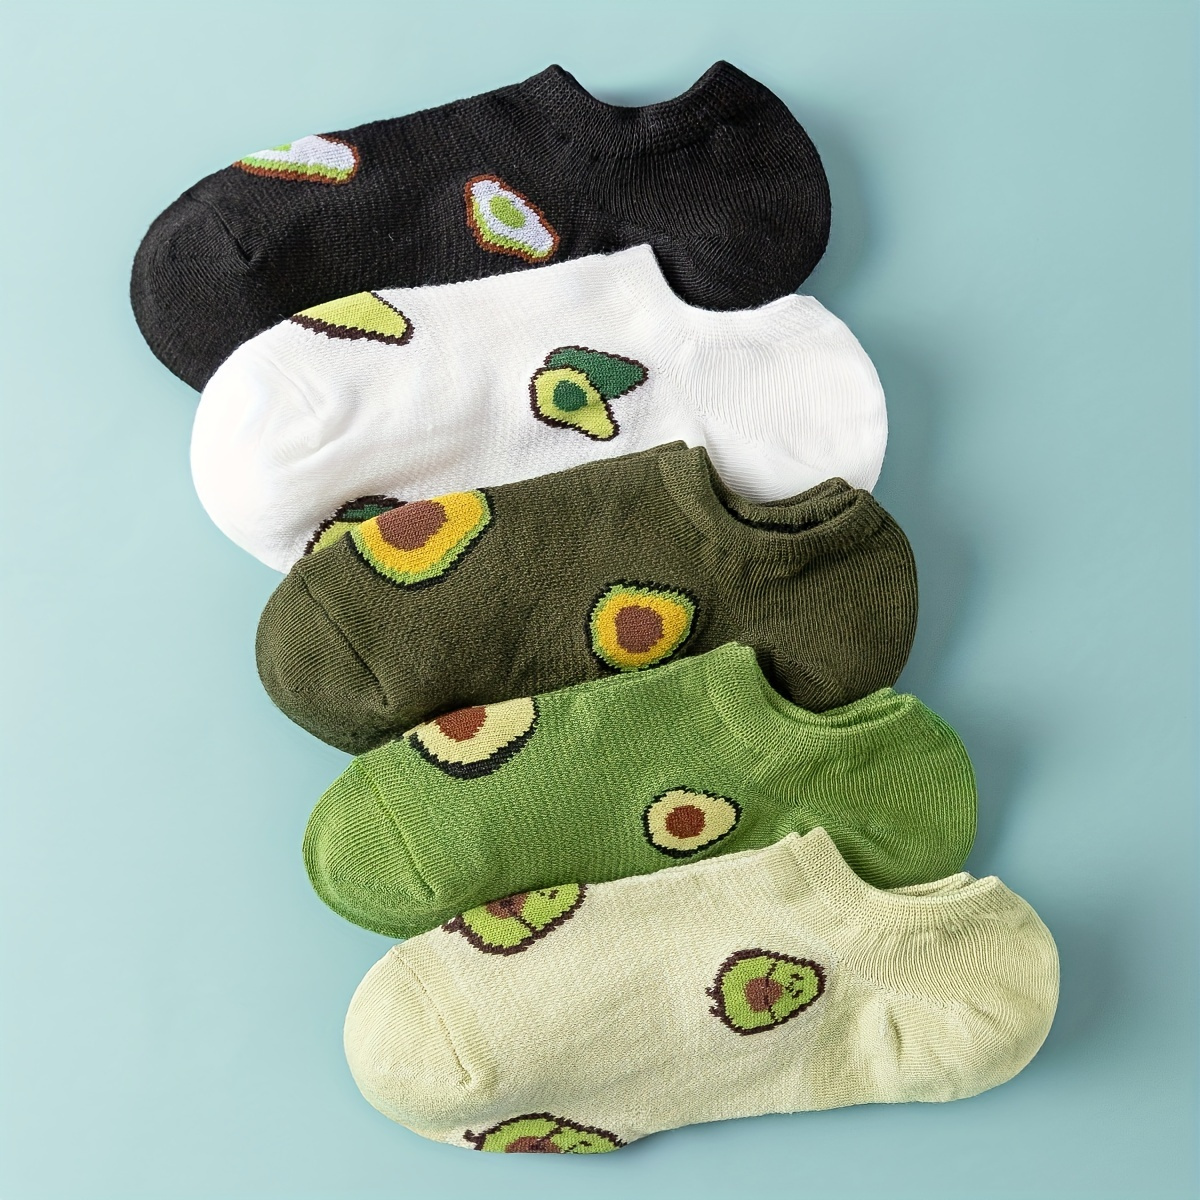 

5 Pairs Avocado Print Crew Socks, Comfy & Cute Low Cut Ankle Socks, Women's Stockings & Hosiery